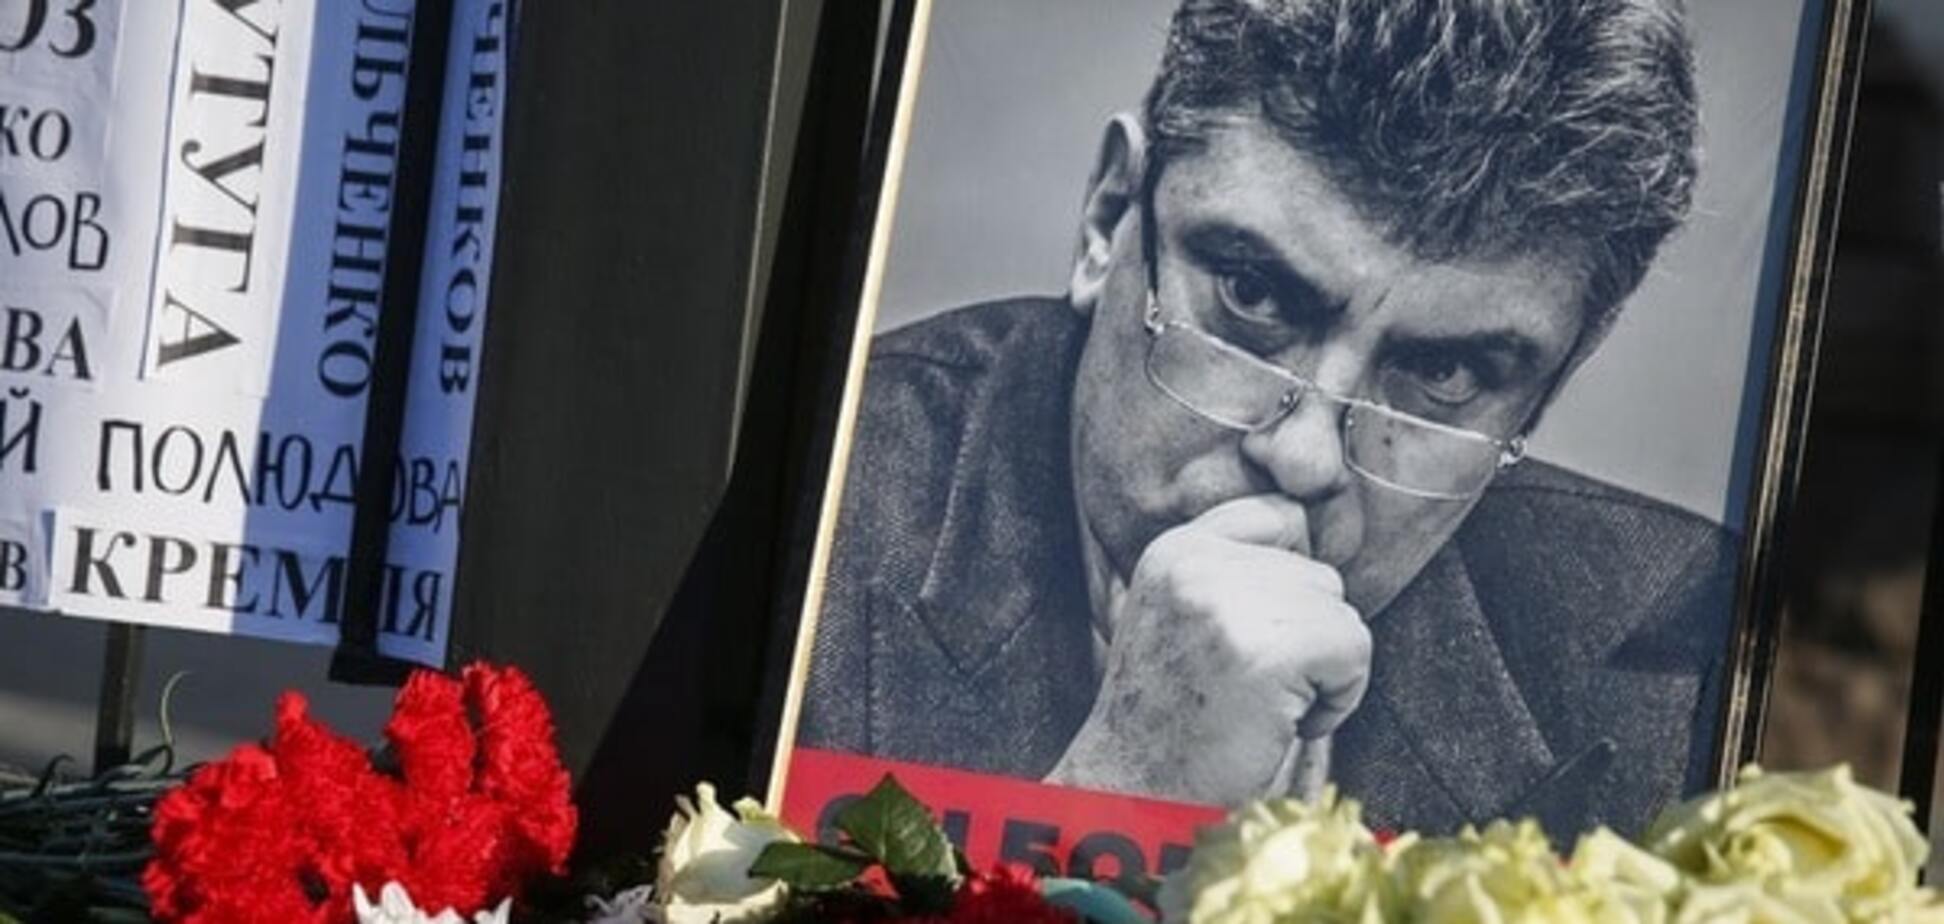 Знайти і покарати: посли країн ЄС закликали притягнути до відповідальності вбивць Нємцова